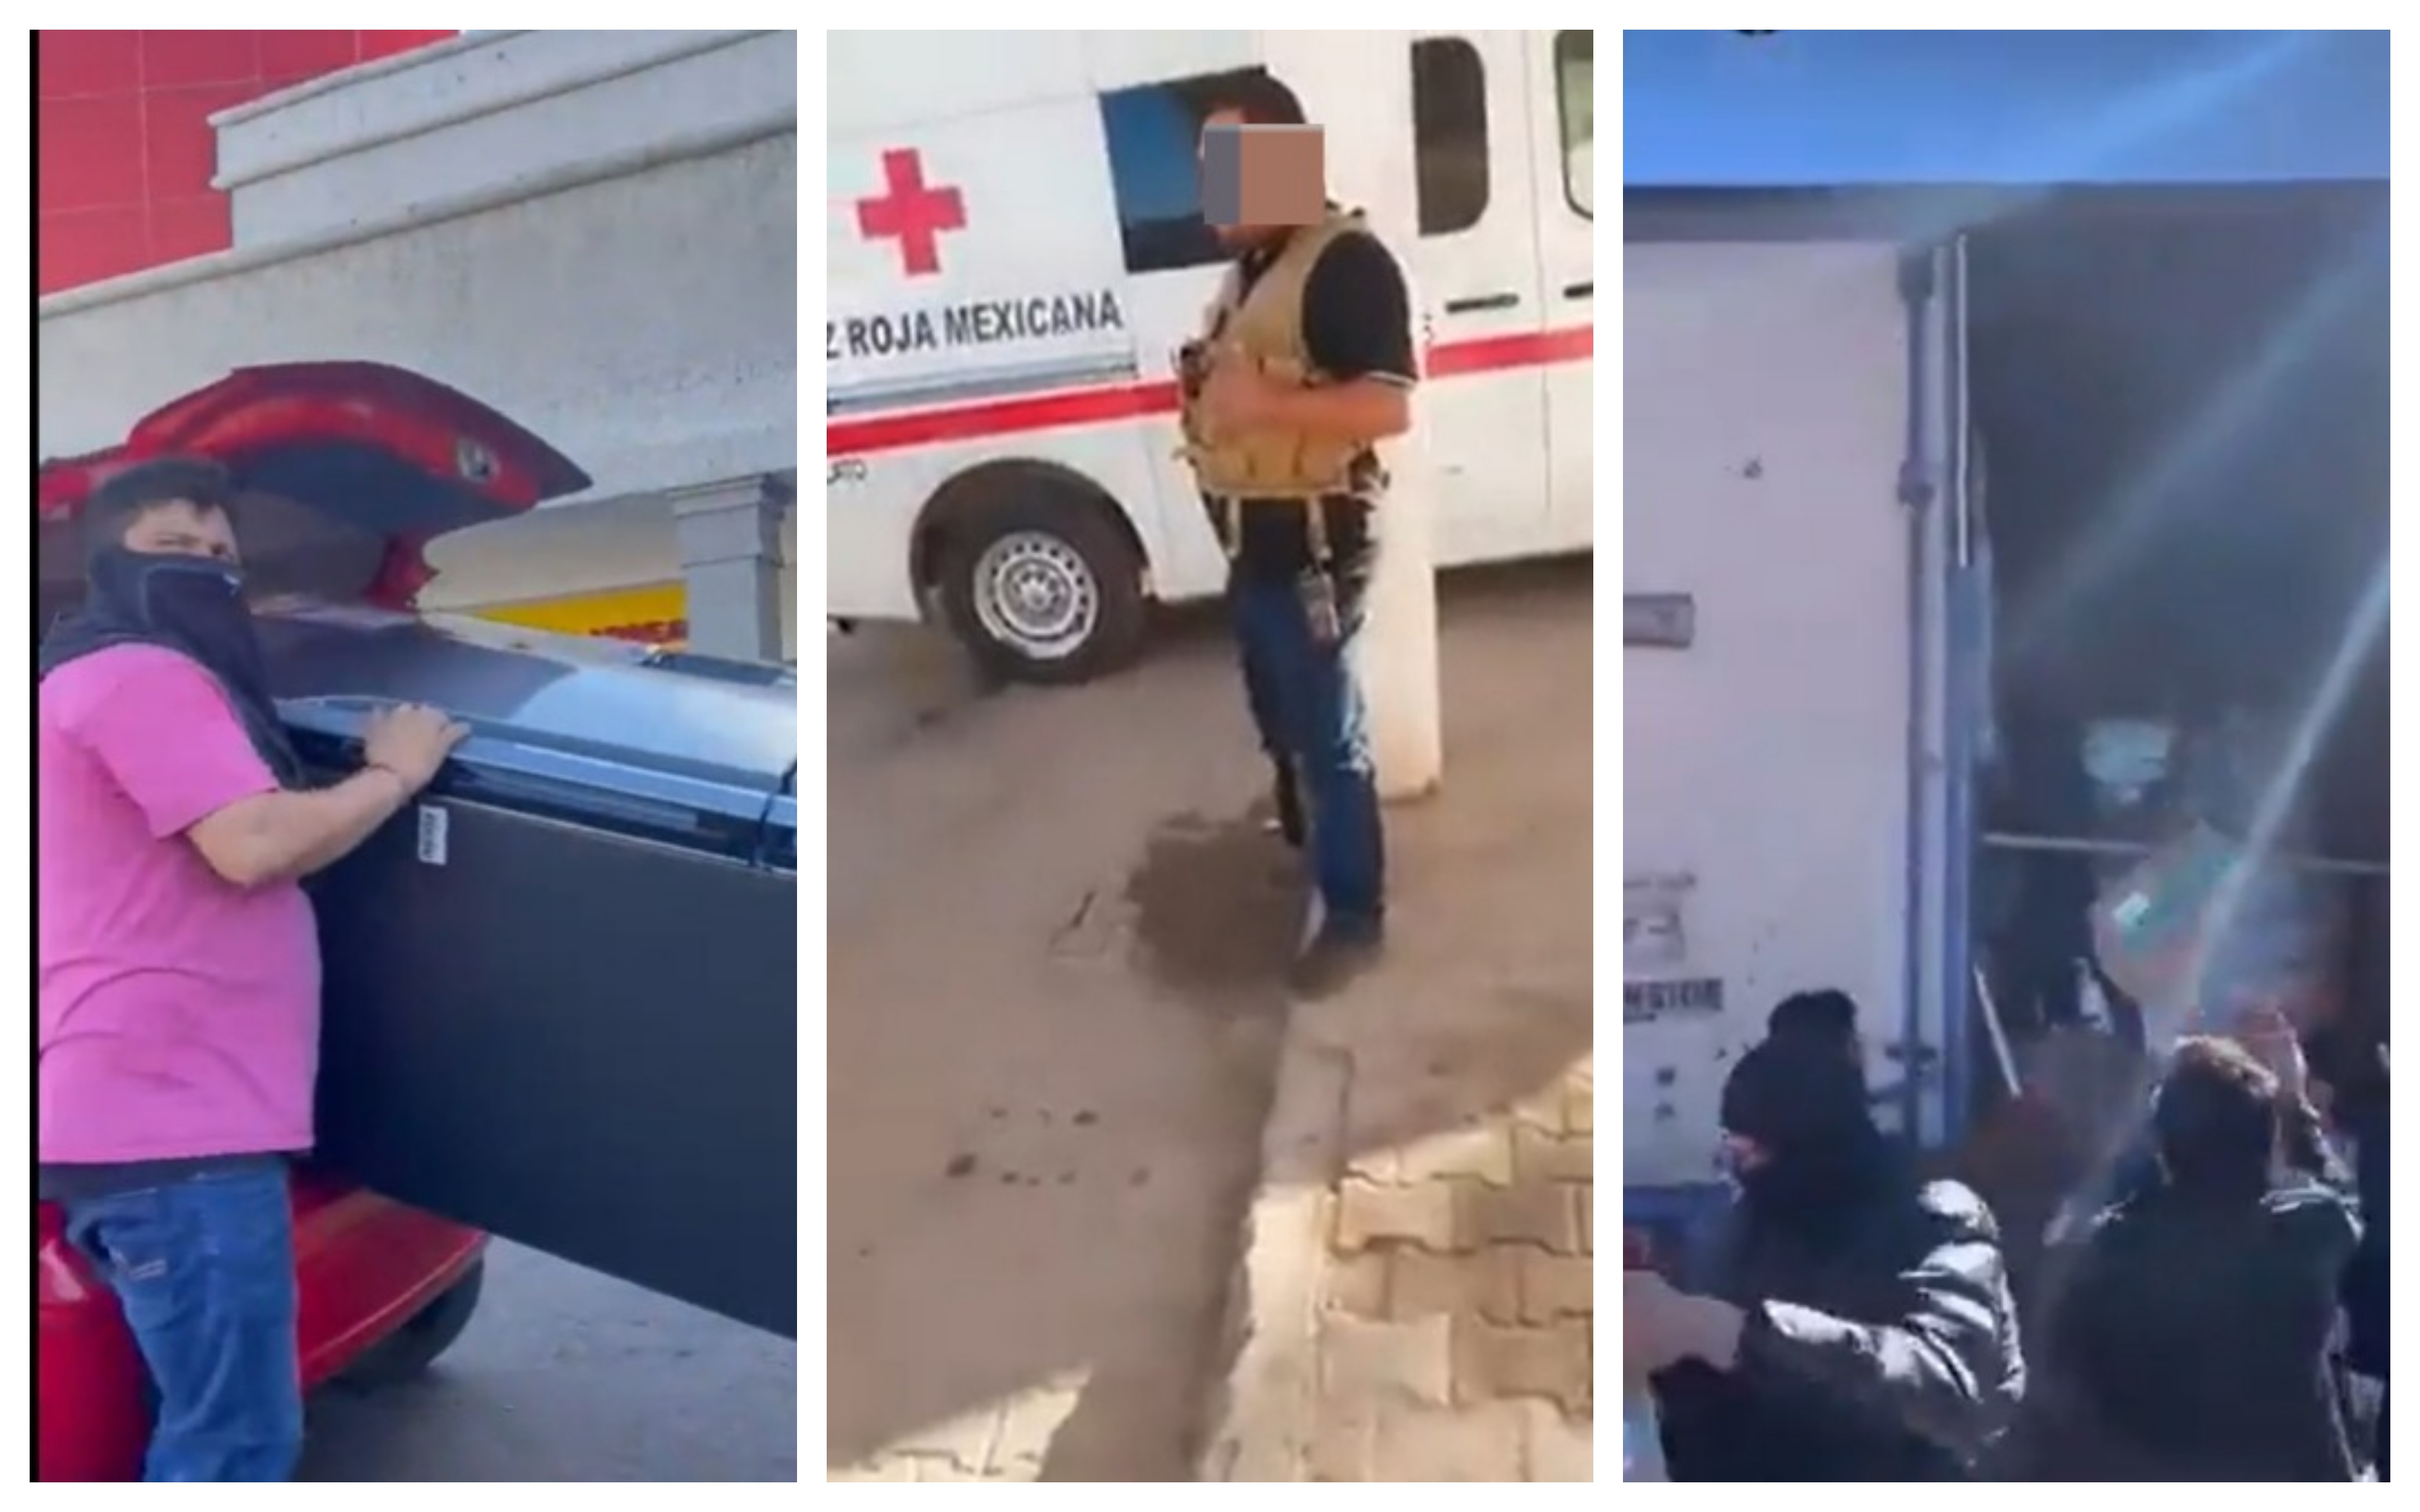 Por medio de redes sociales se dieron a conocer saqueos y captura de ambulancias en Sinaloa
(GettyImages)